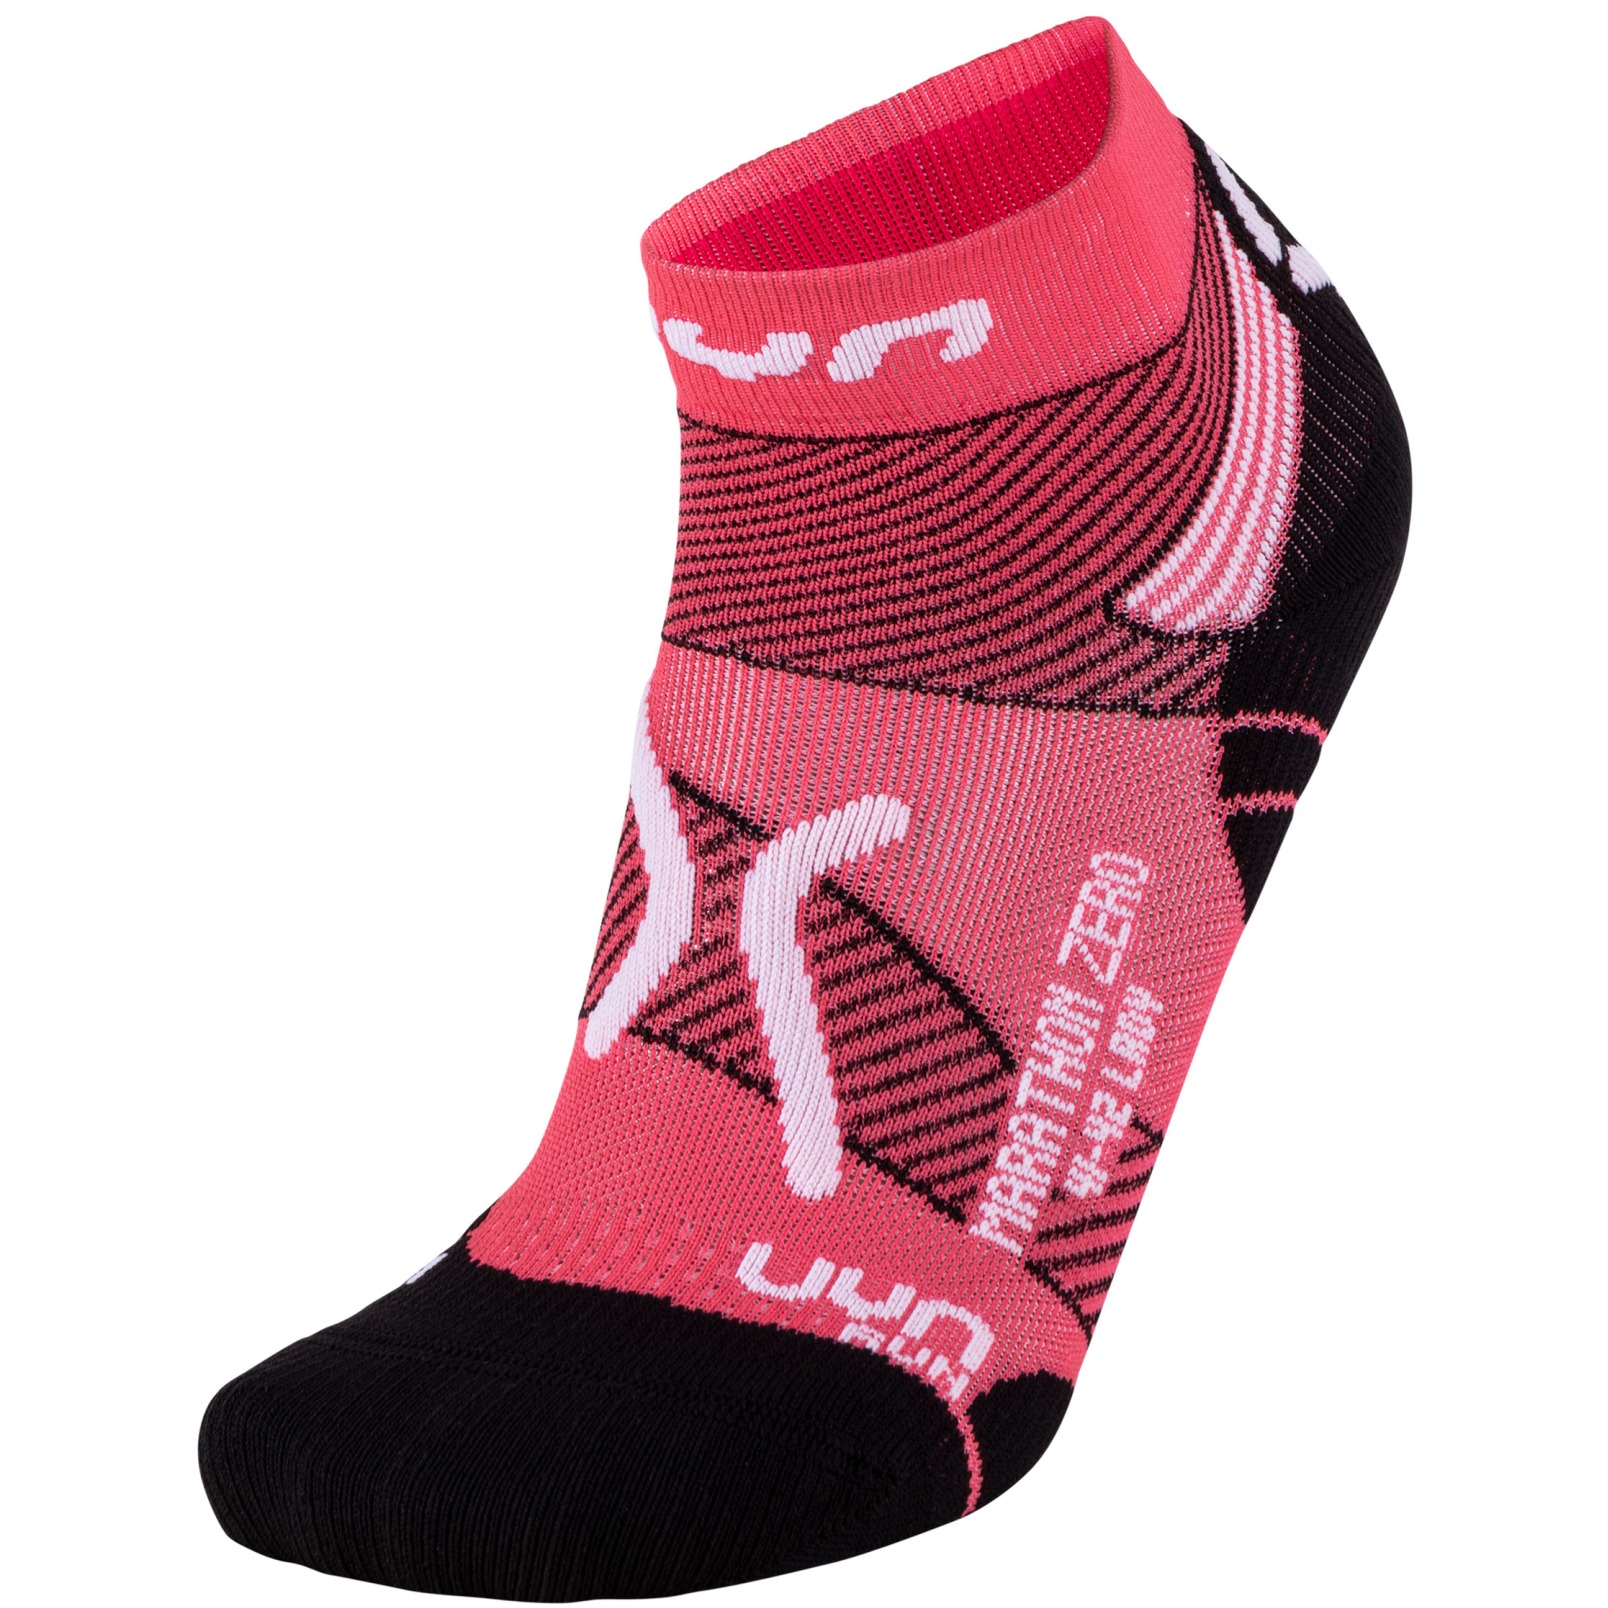 Produktbild von UYN Marathon Zero Socken Damen - Coral/White